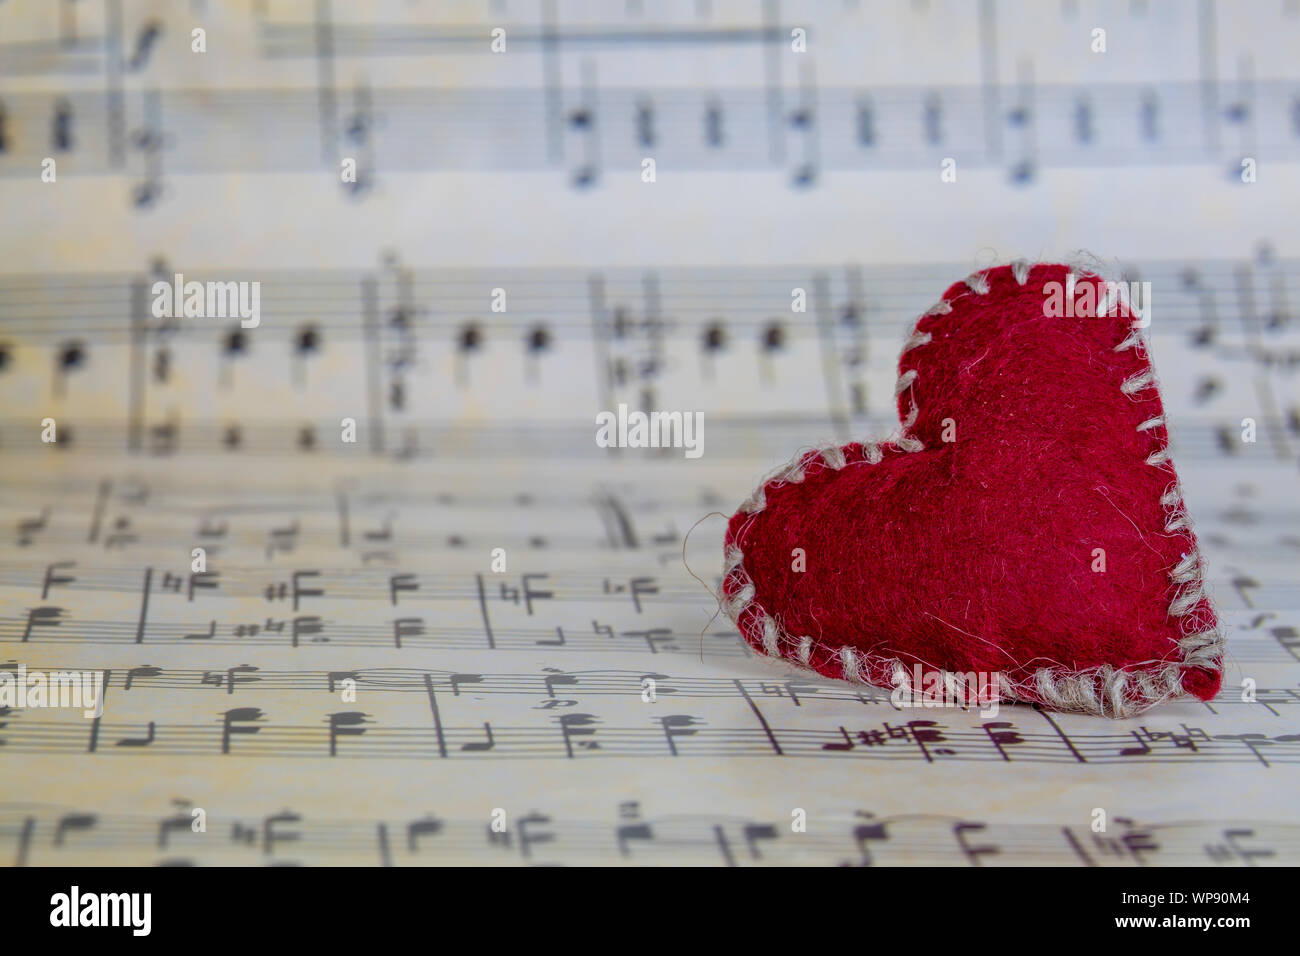 Amore e musica, canzone di concetto Foto Stock